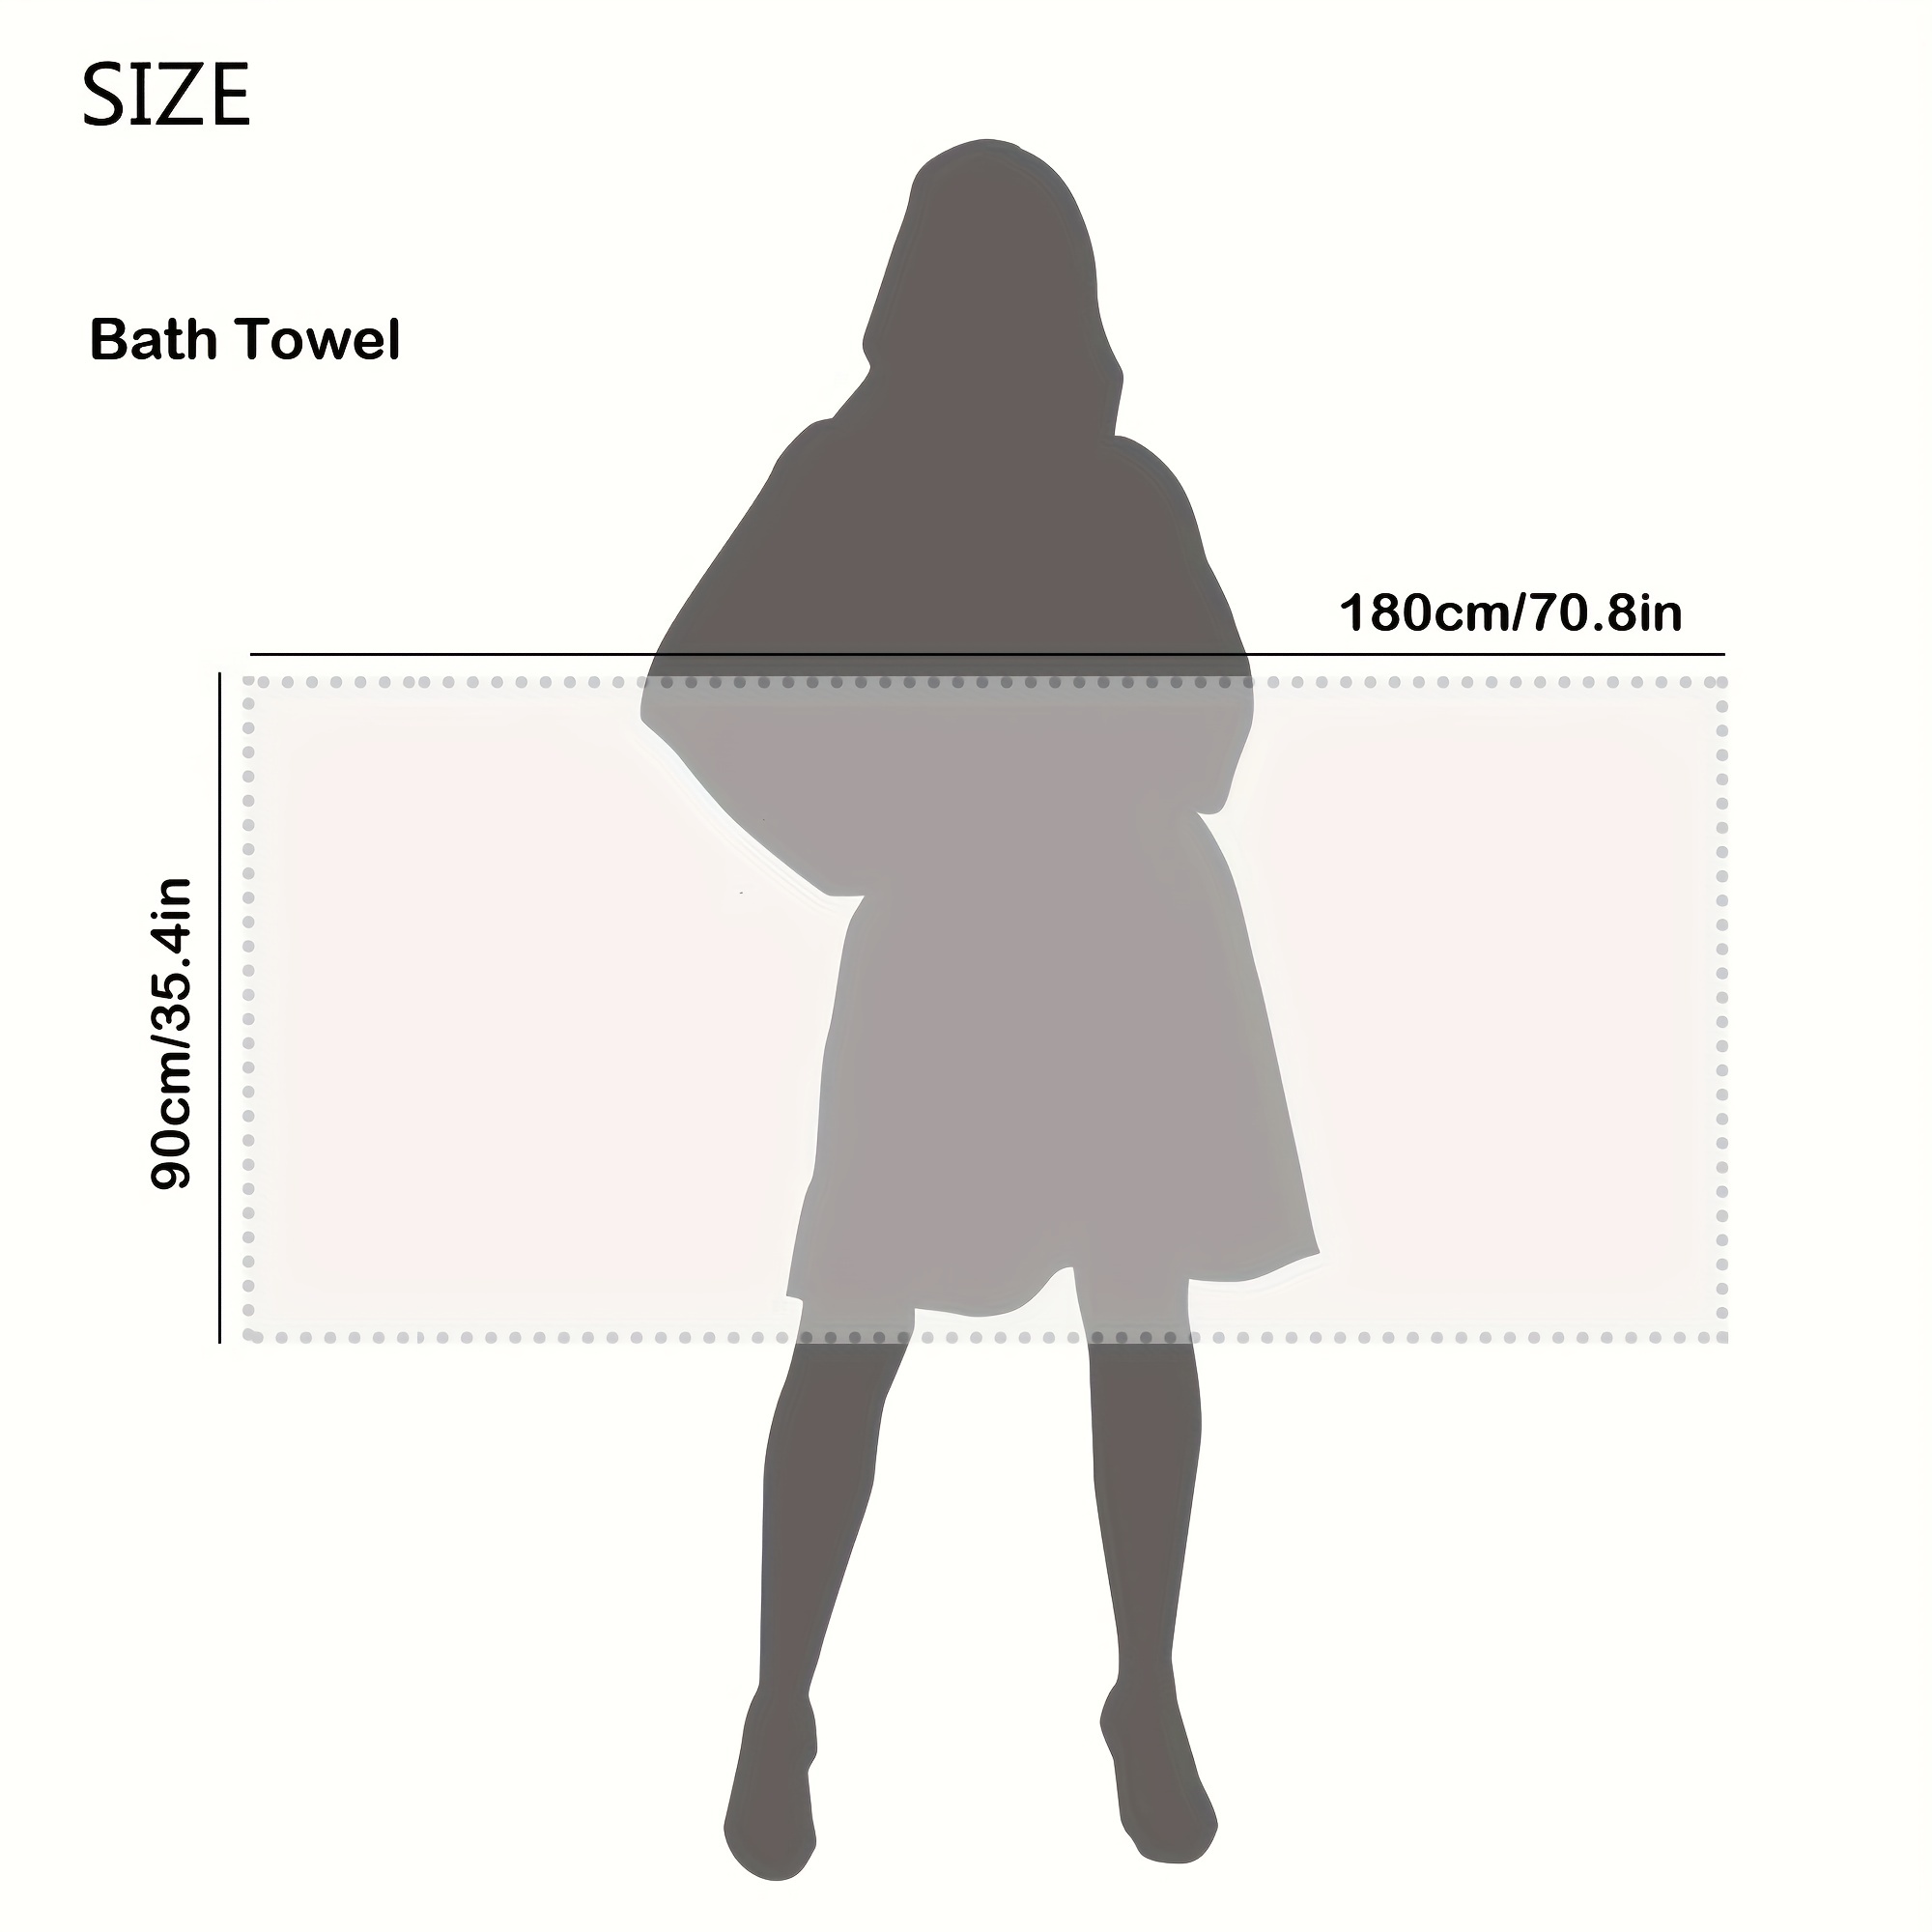 Solid Color Bath Sheet, Pure Cotton Large Bath Towel, Adult Large